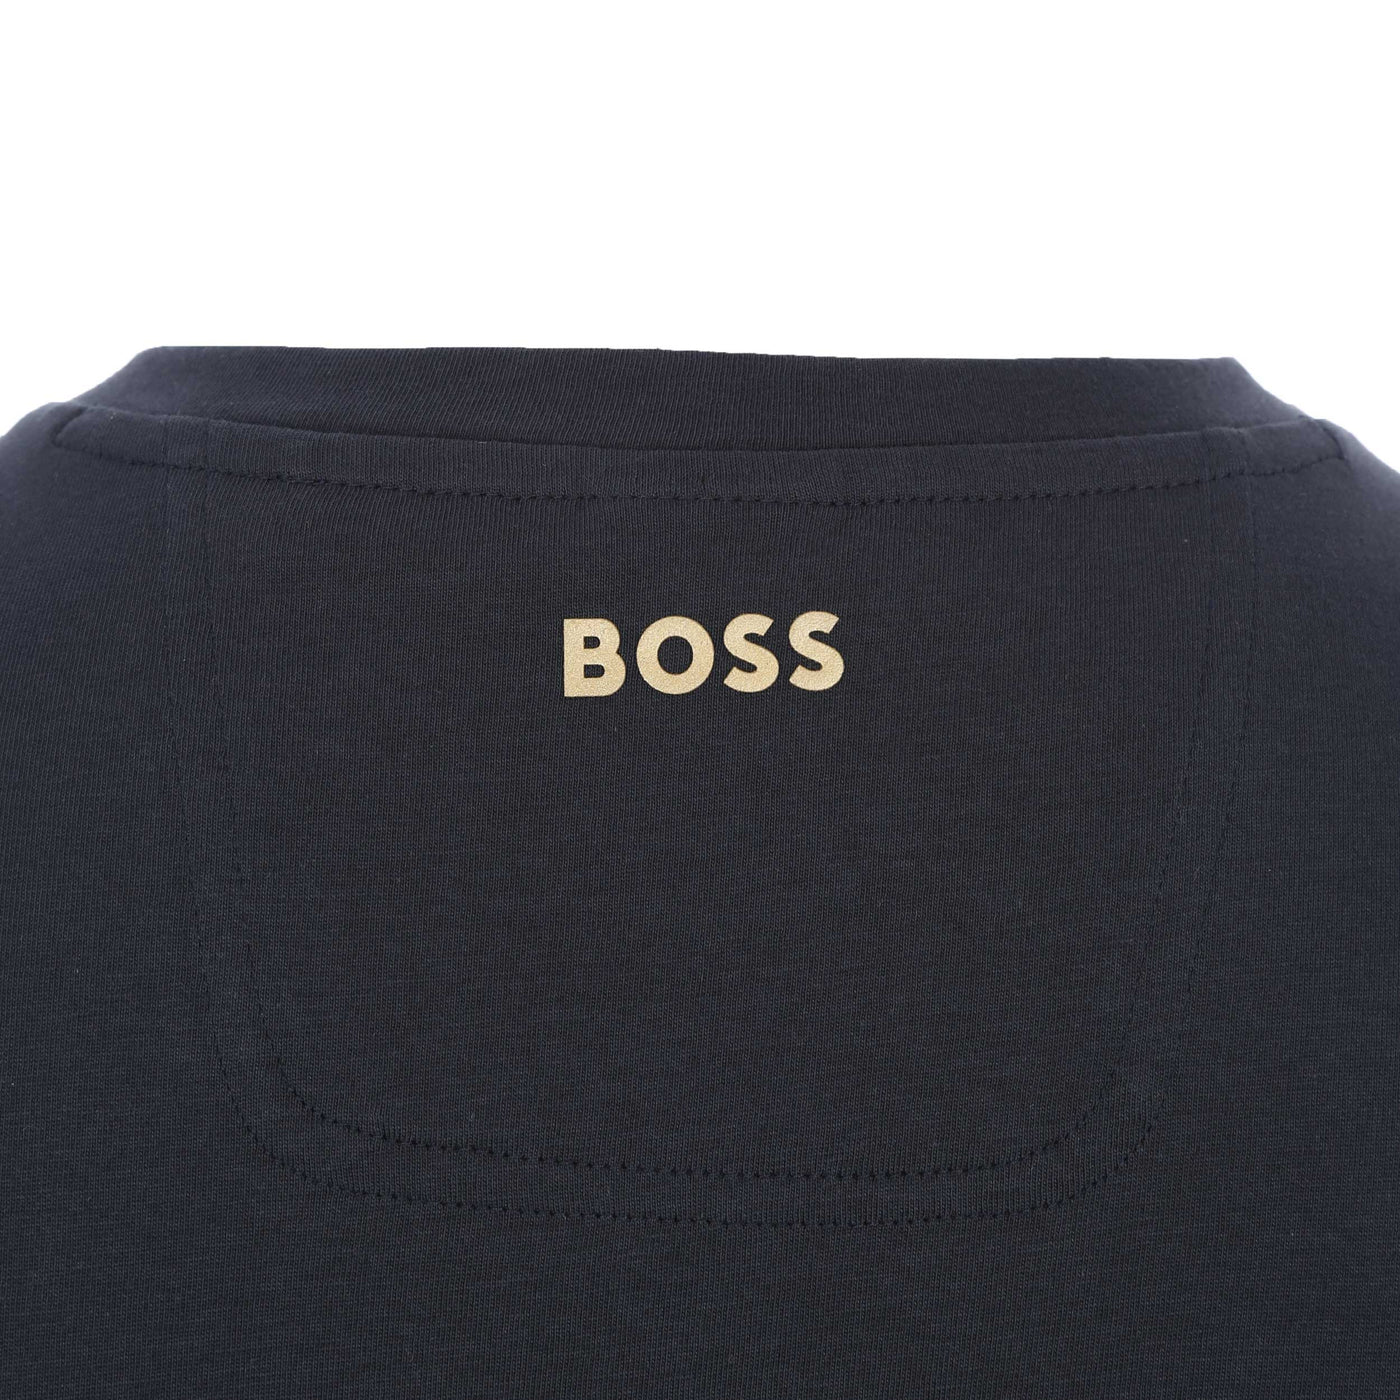 BOSS Tee 1 T-Shirt in Navy & Gold